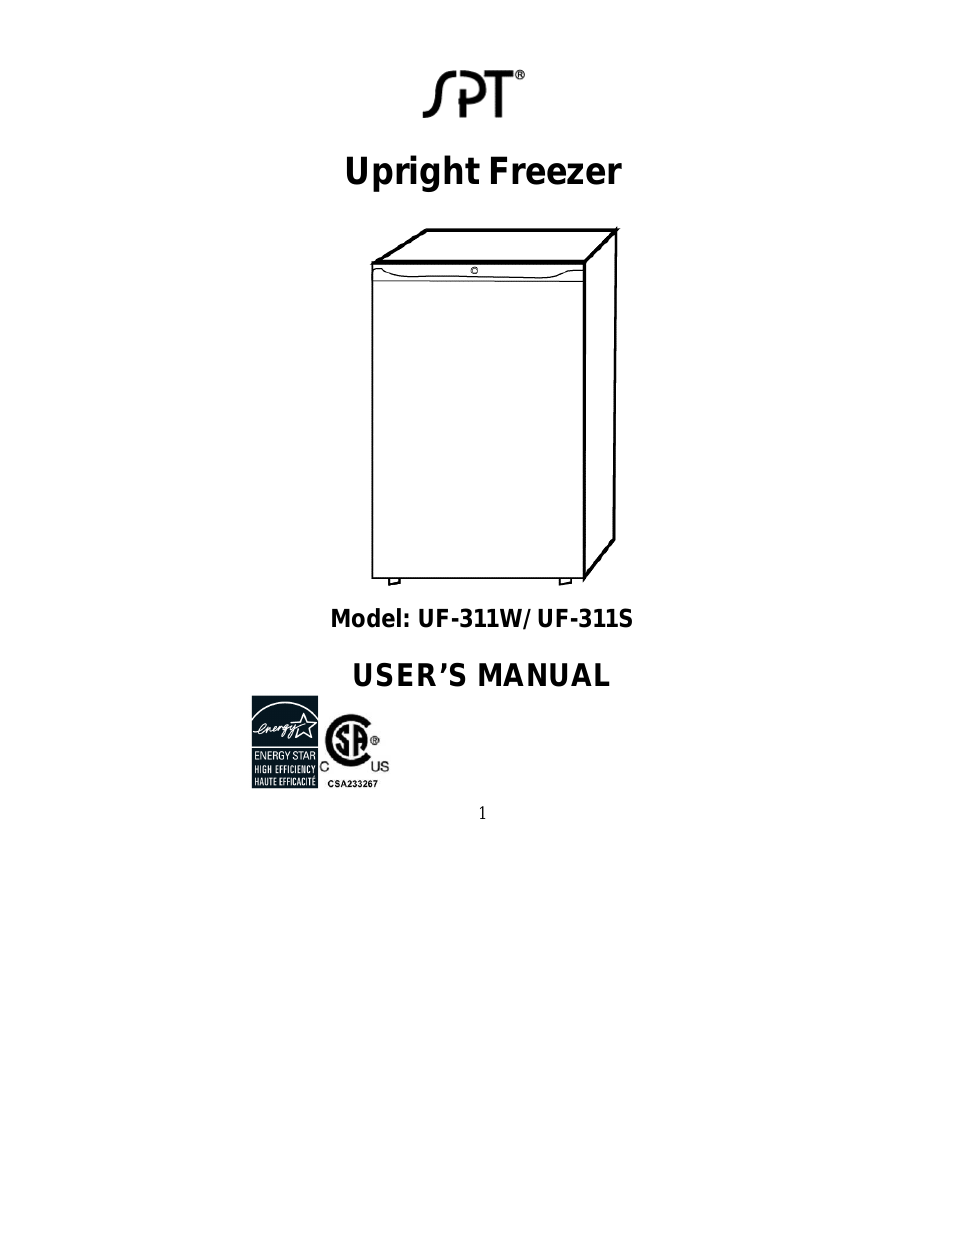 Upright Freezer UF-311W